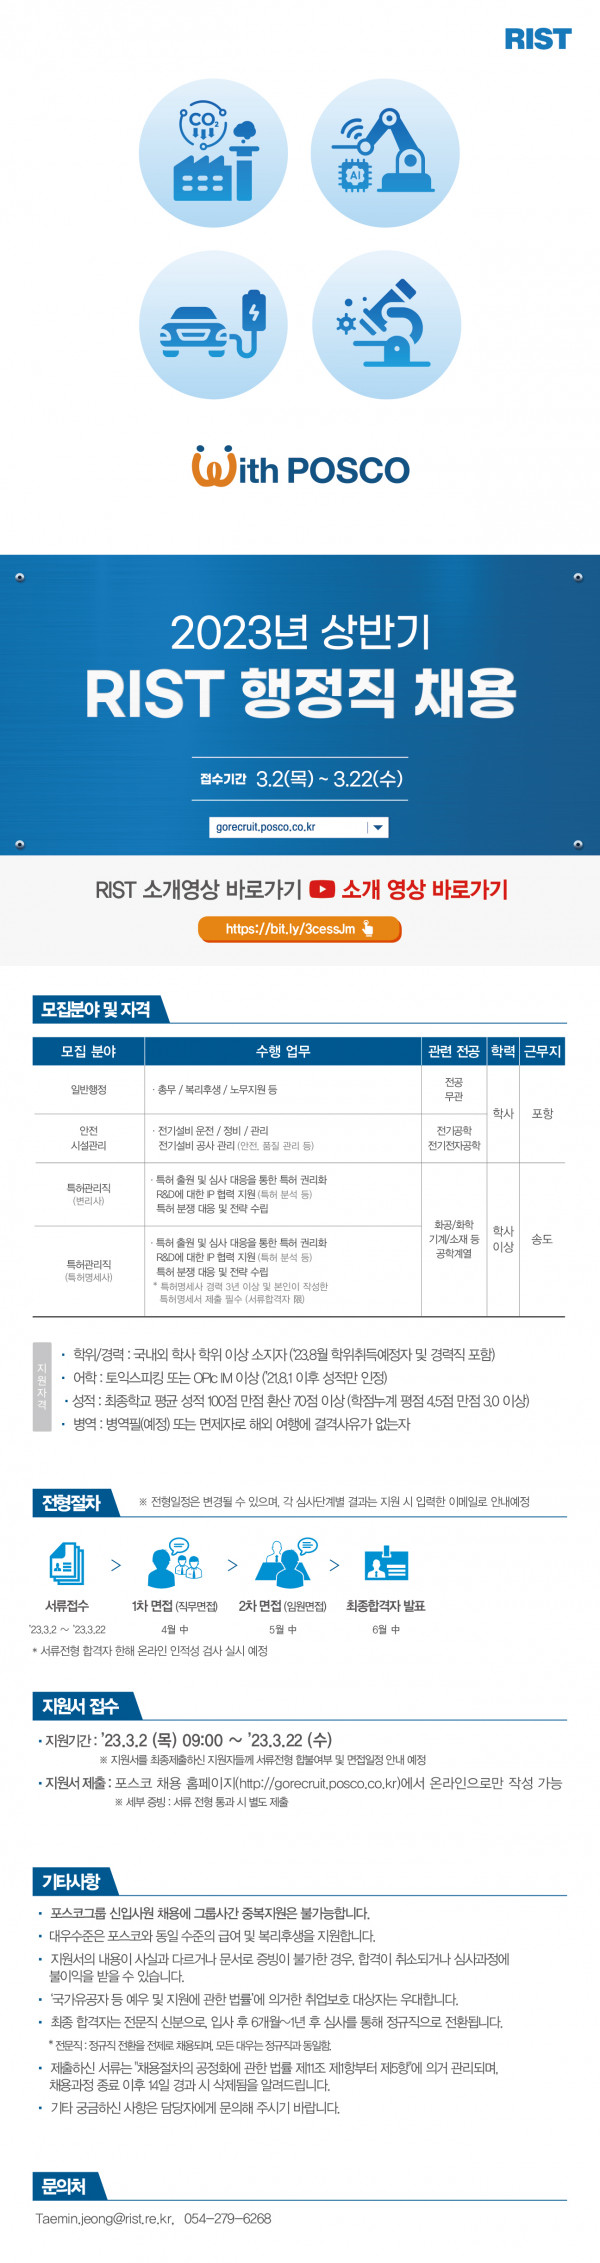 2023_RIST_상반기_공개_채용_웹플라이어_행정직_채용.jpg